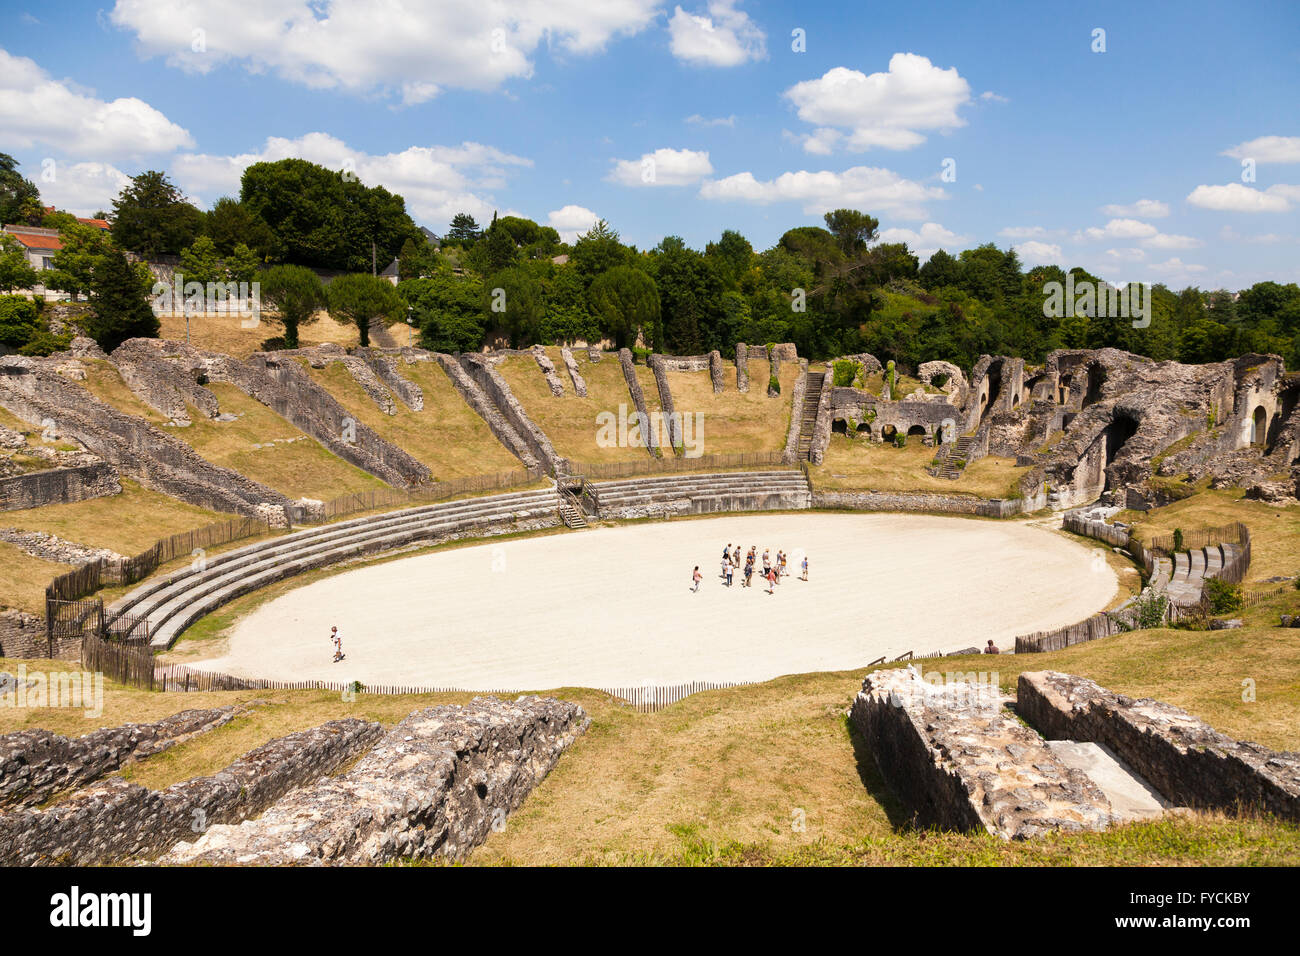 Touristen in der Arena des römischen Amphitheaters, Saintes, Département Charente-Maritime, Frankreich Stockfoto